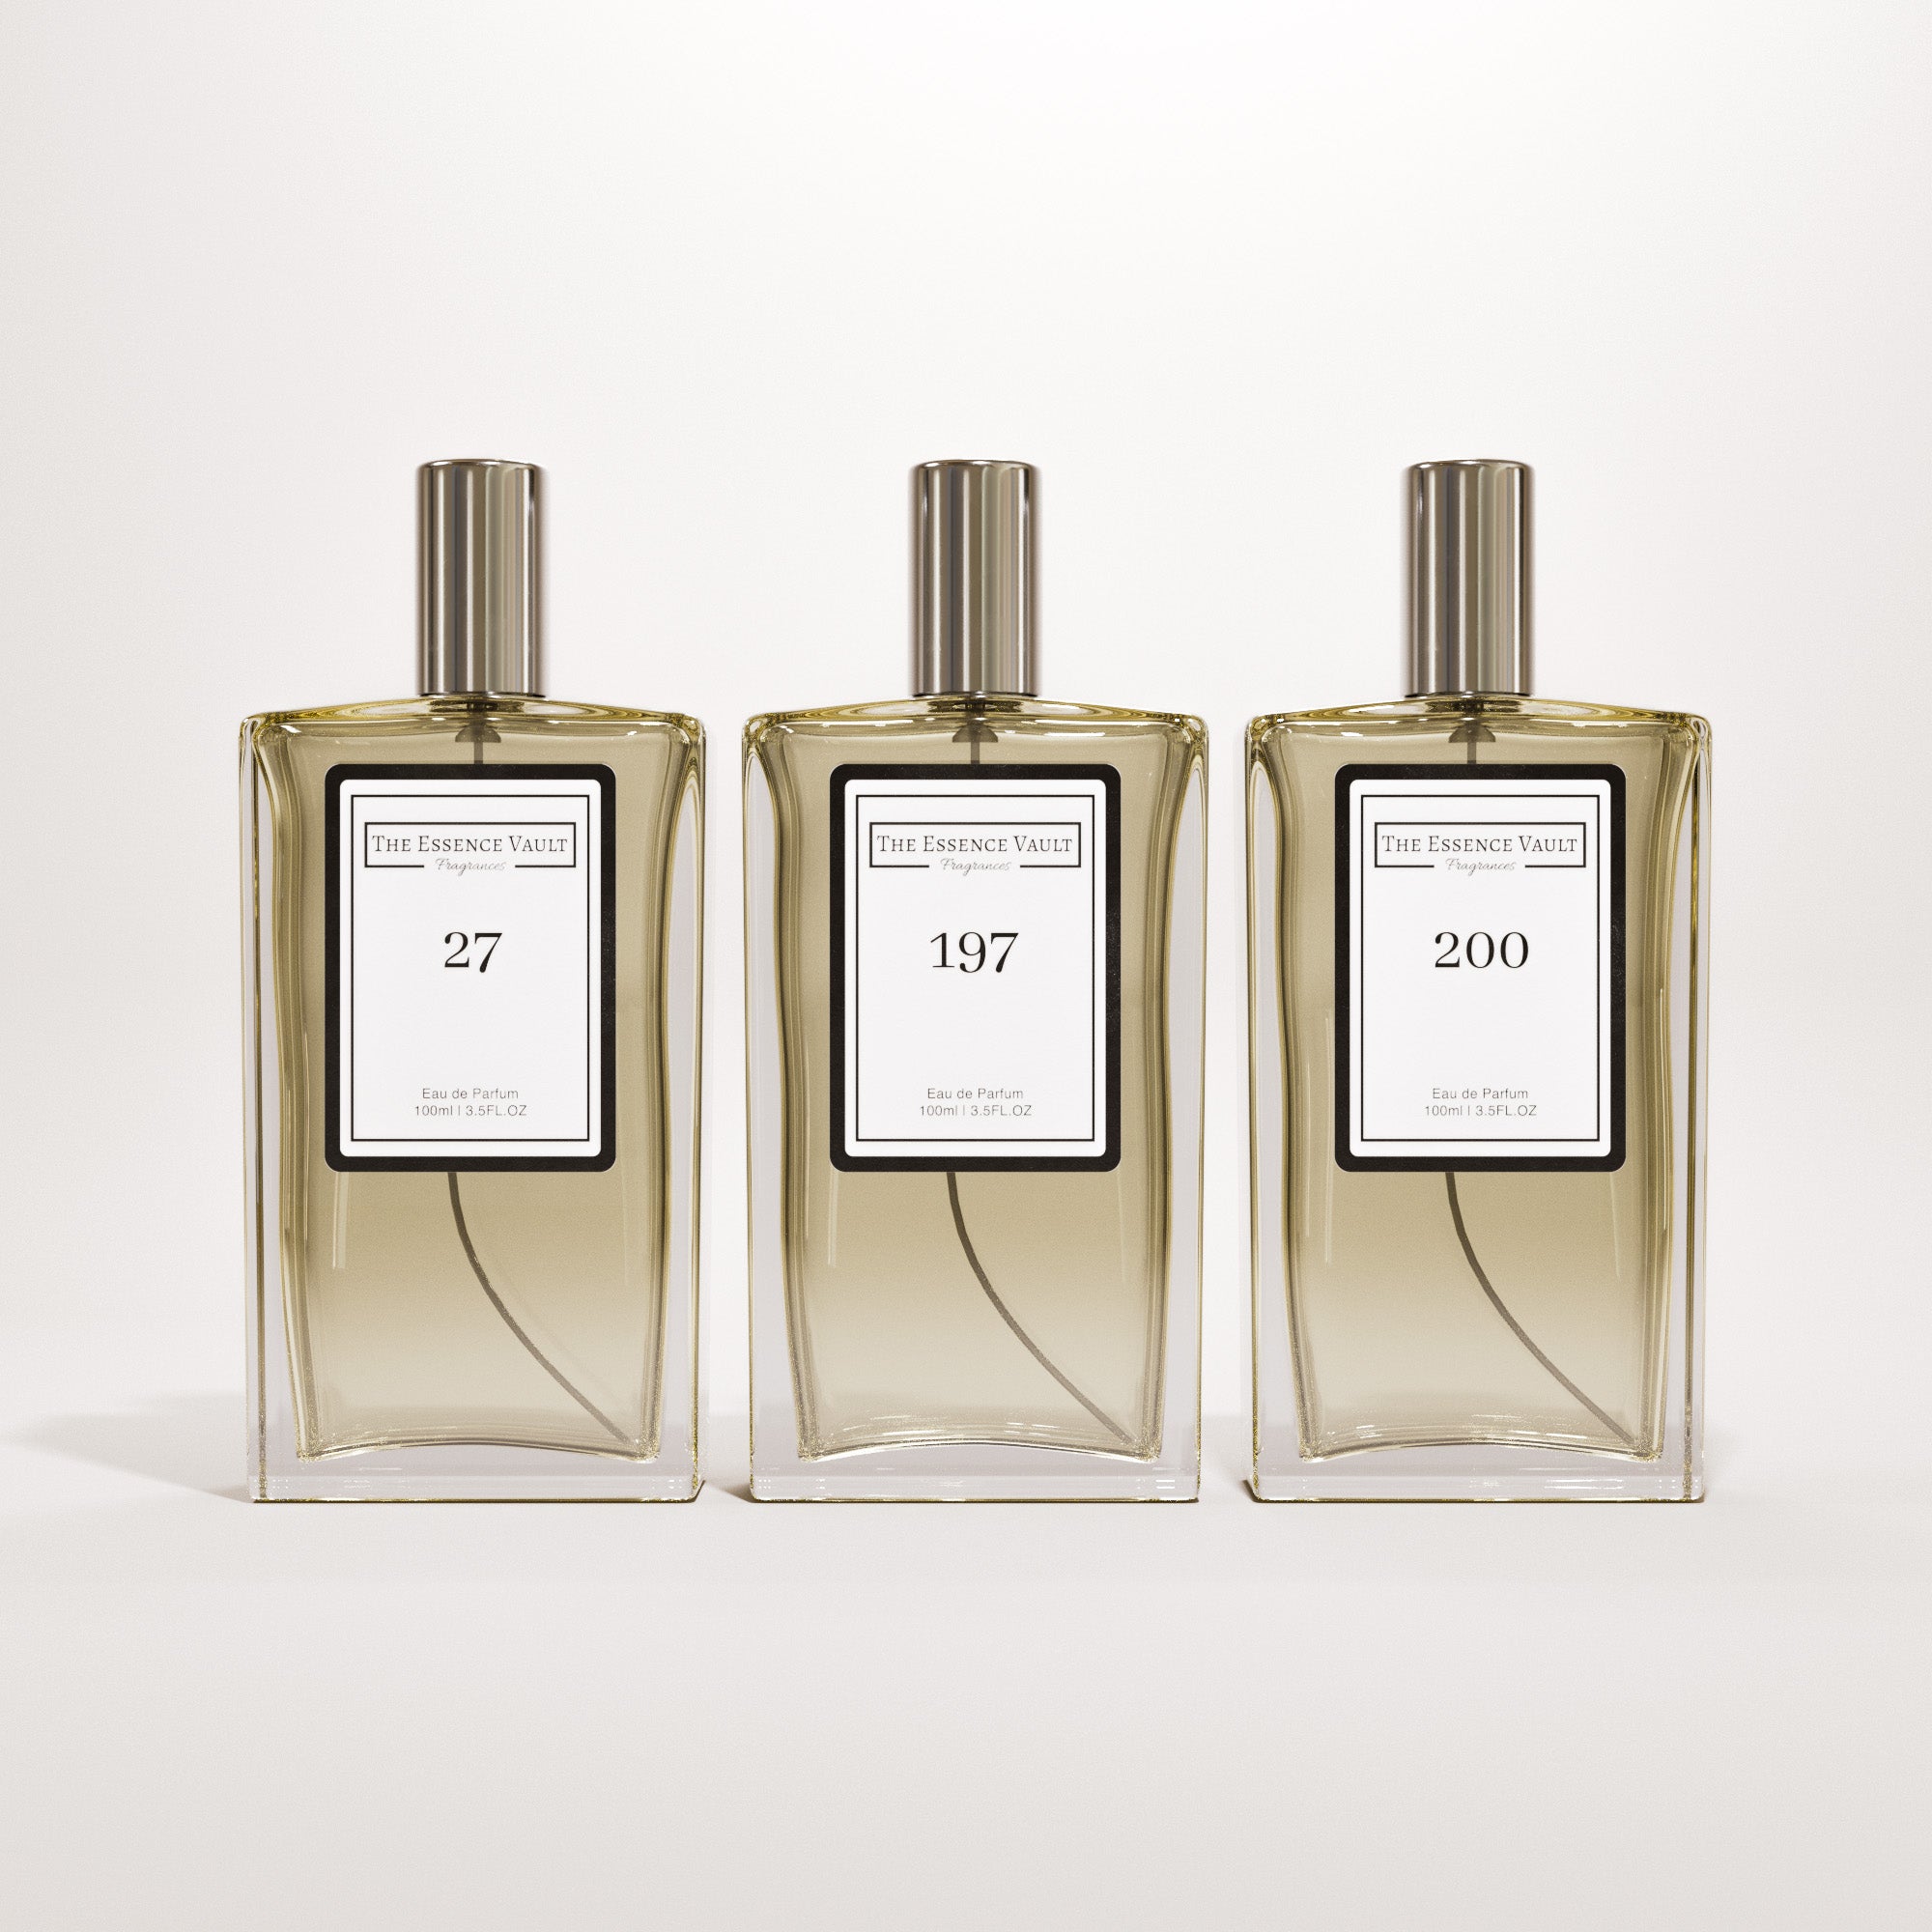 Lancome La Vie Est Belle Fragrances - Perfumes, Colognes, Parfums, Scents  resource guide - The Perfume Girl